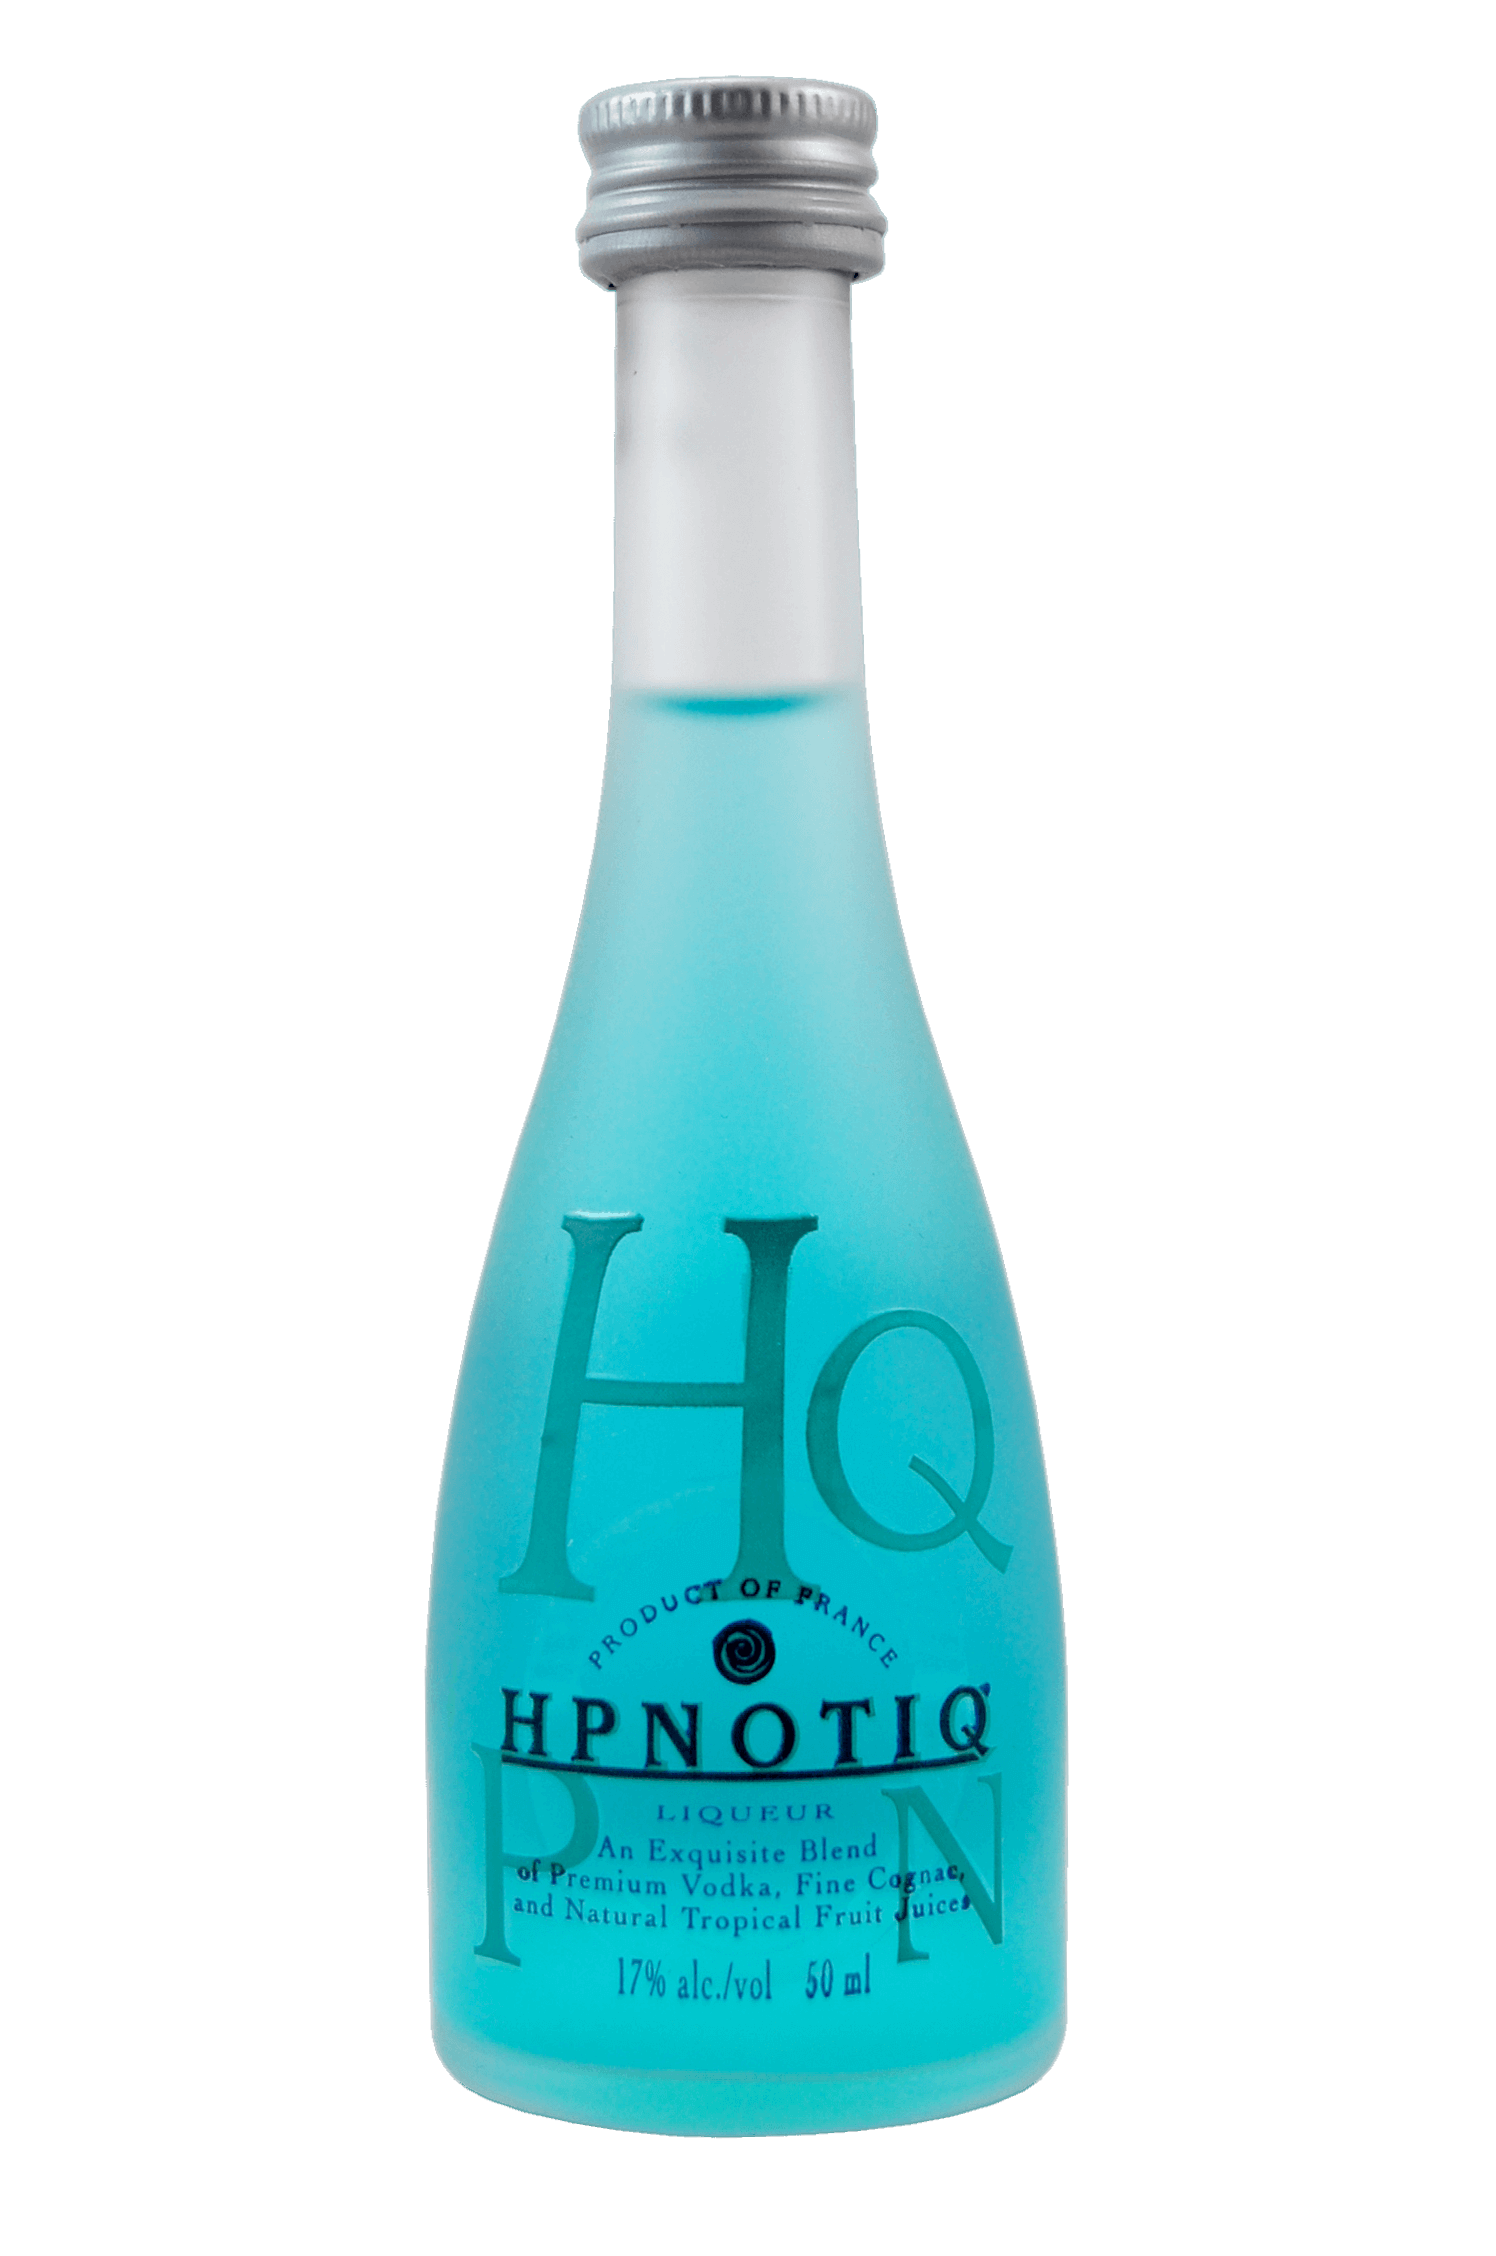 Hq Hpnotiq Liqueur